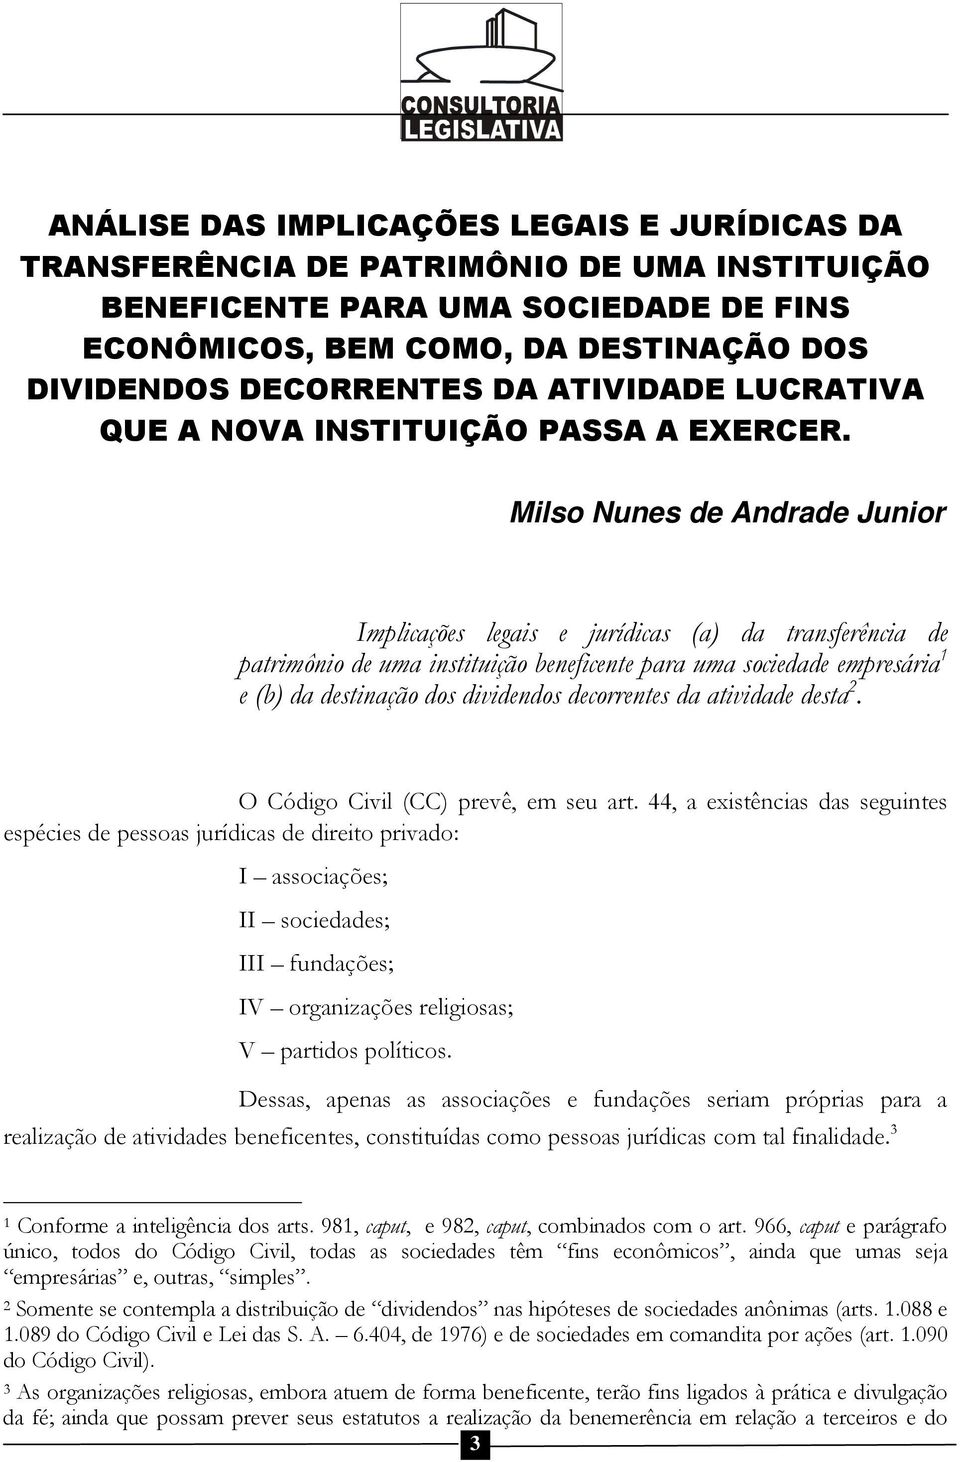 Milso Nunes de Andrade Junior Implicações legais e jurídicas (a) da transferência de patrimônio de uma instituição beneficente para uma sociedade empresária 1 e (b) da destinação dos dividendos